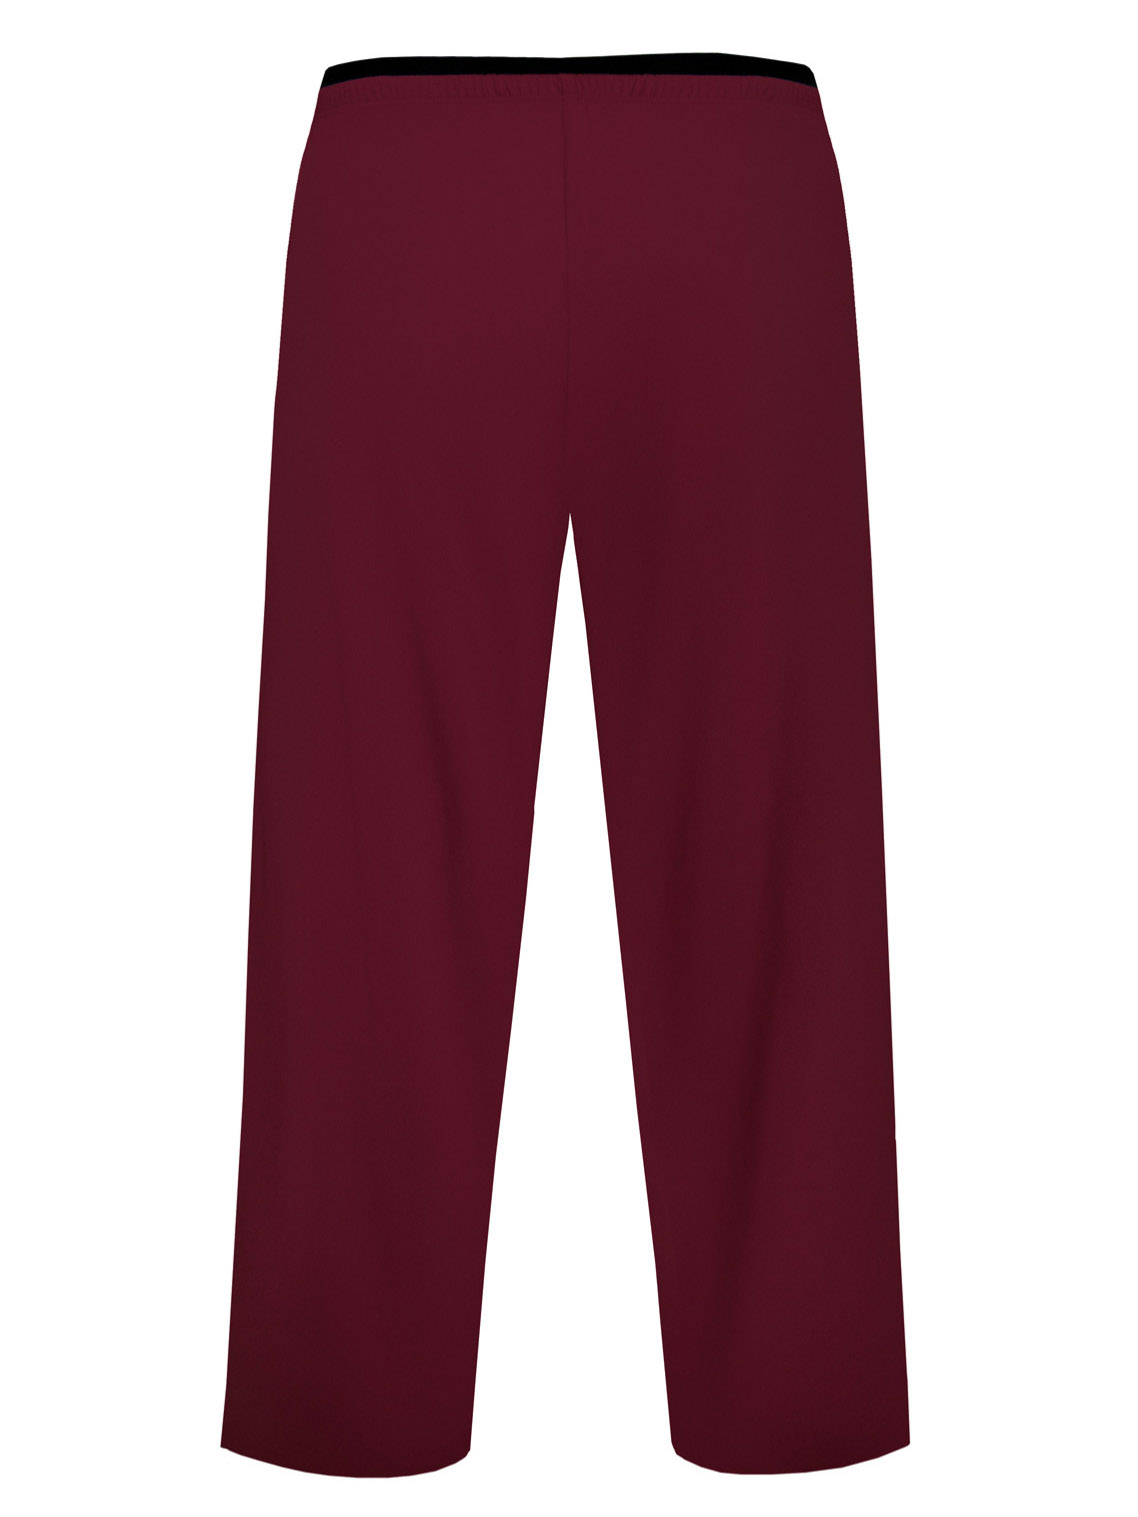 Женские пижамные штаны из нежной вискозы с карманами Nipplex Margot 3/4 #8